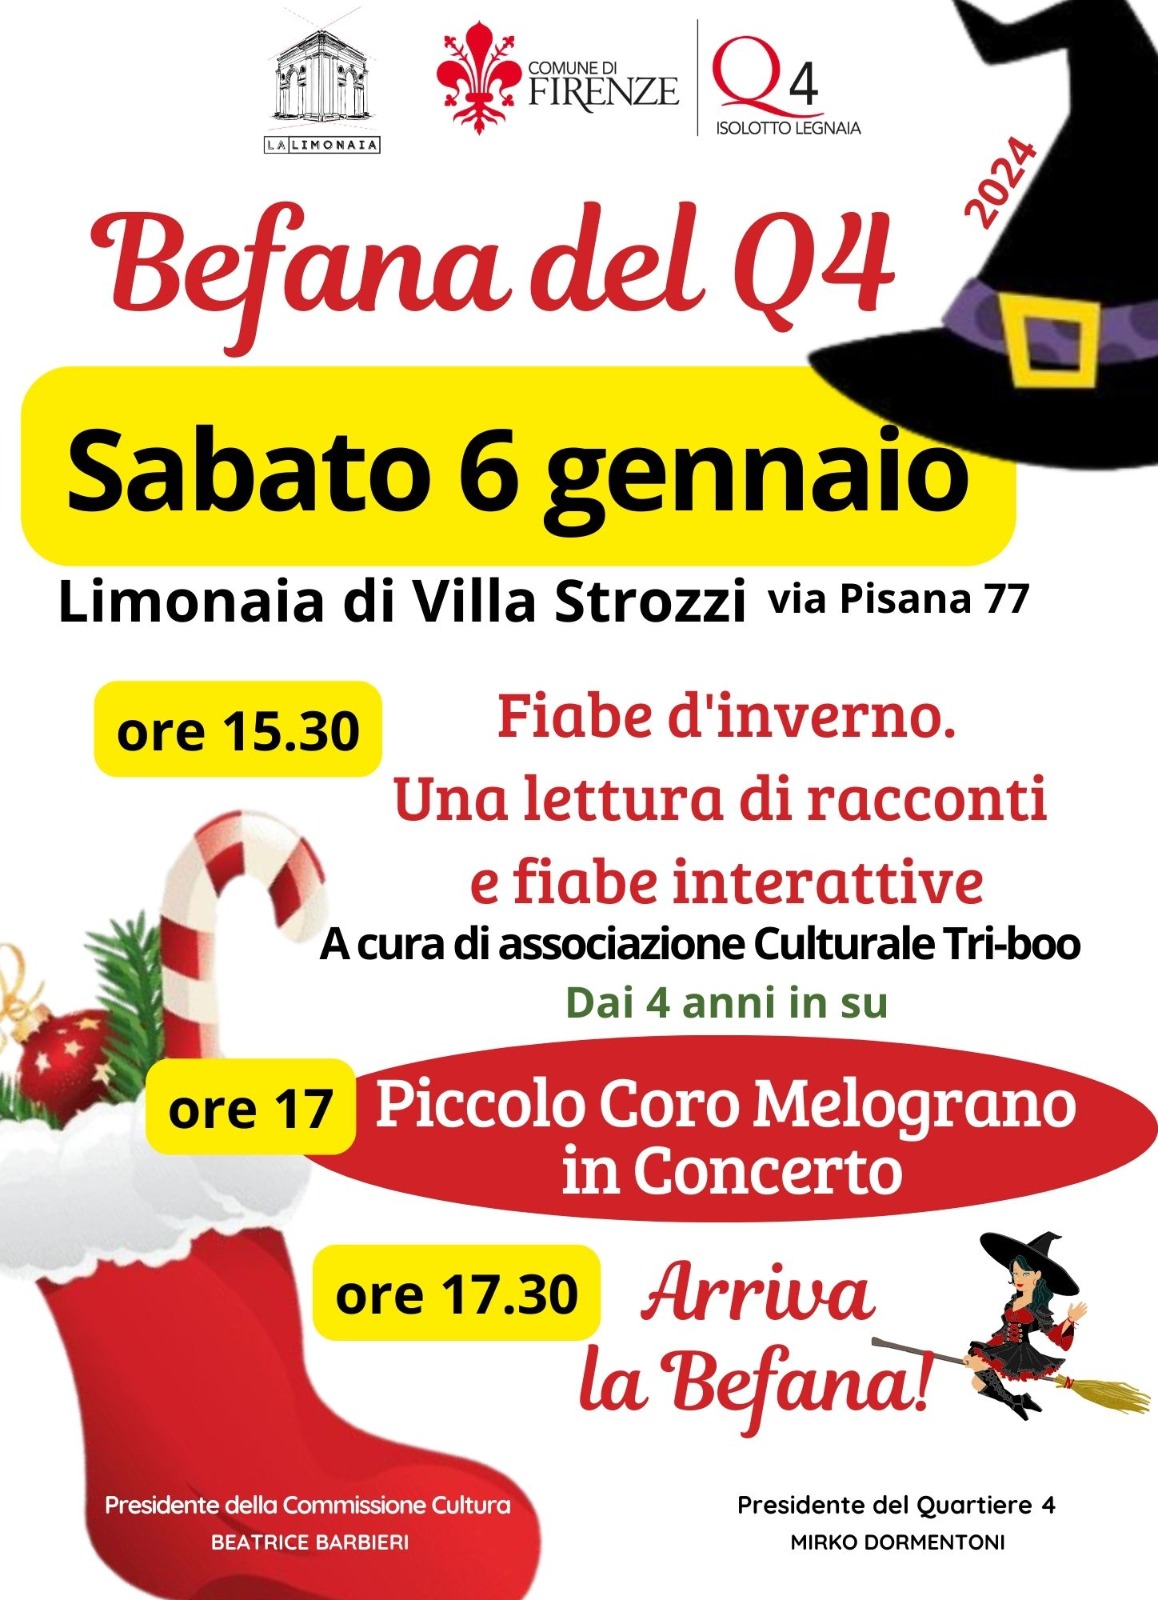 Sabato 6 gennaio, Limonaia Villa Strozzi, via Pisana 77 – Befana al Q4